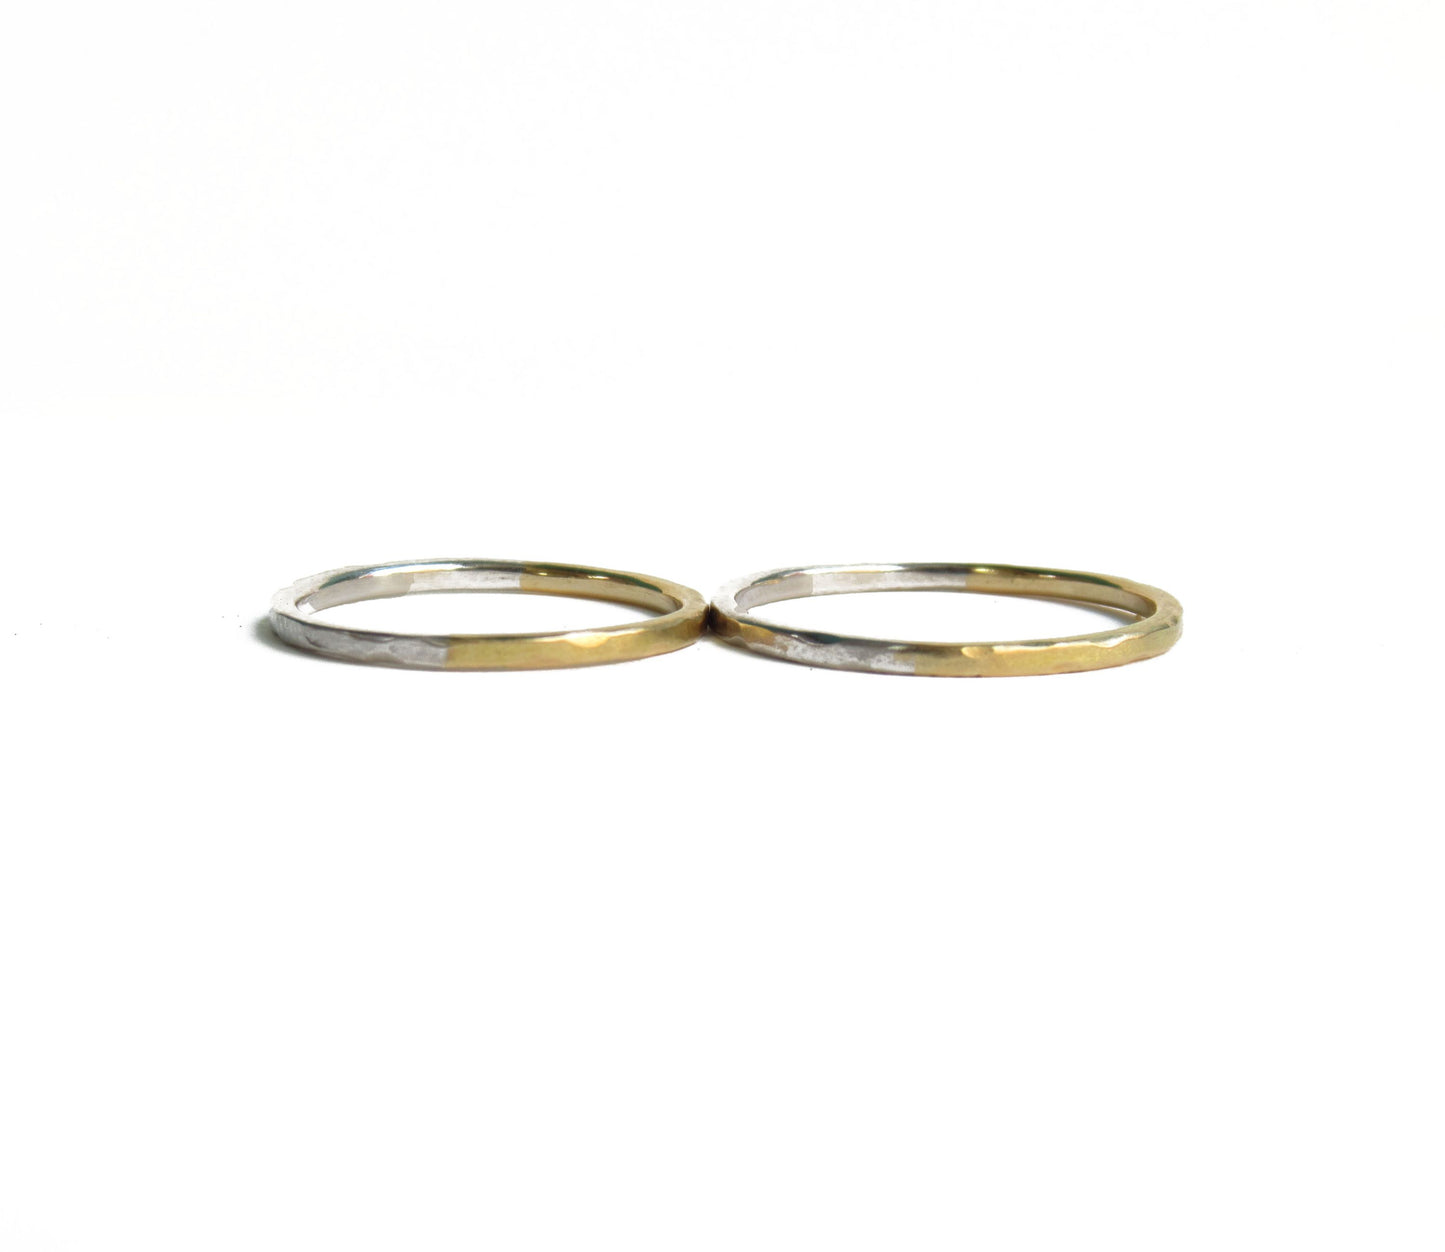 Pt900×K18 half marriage ring / Pt900,K18